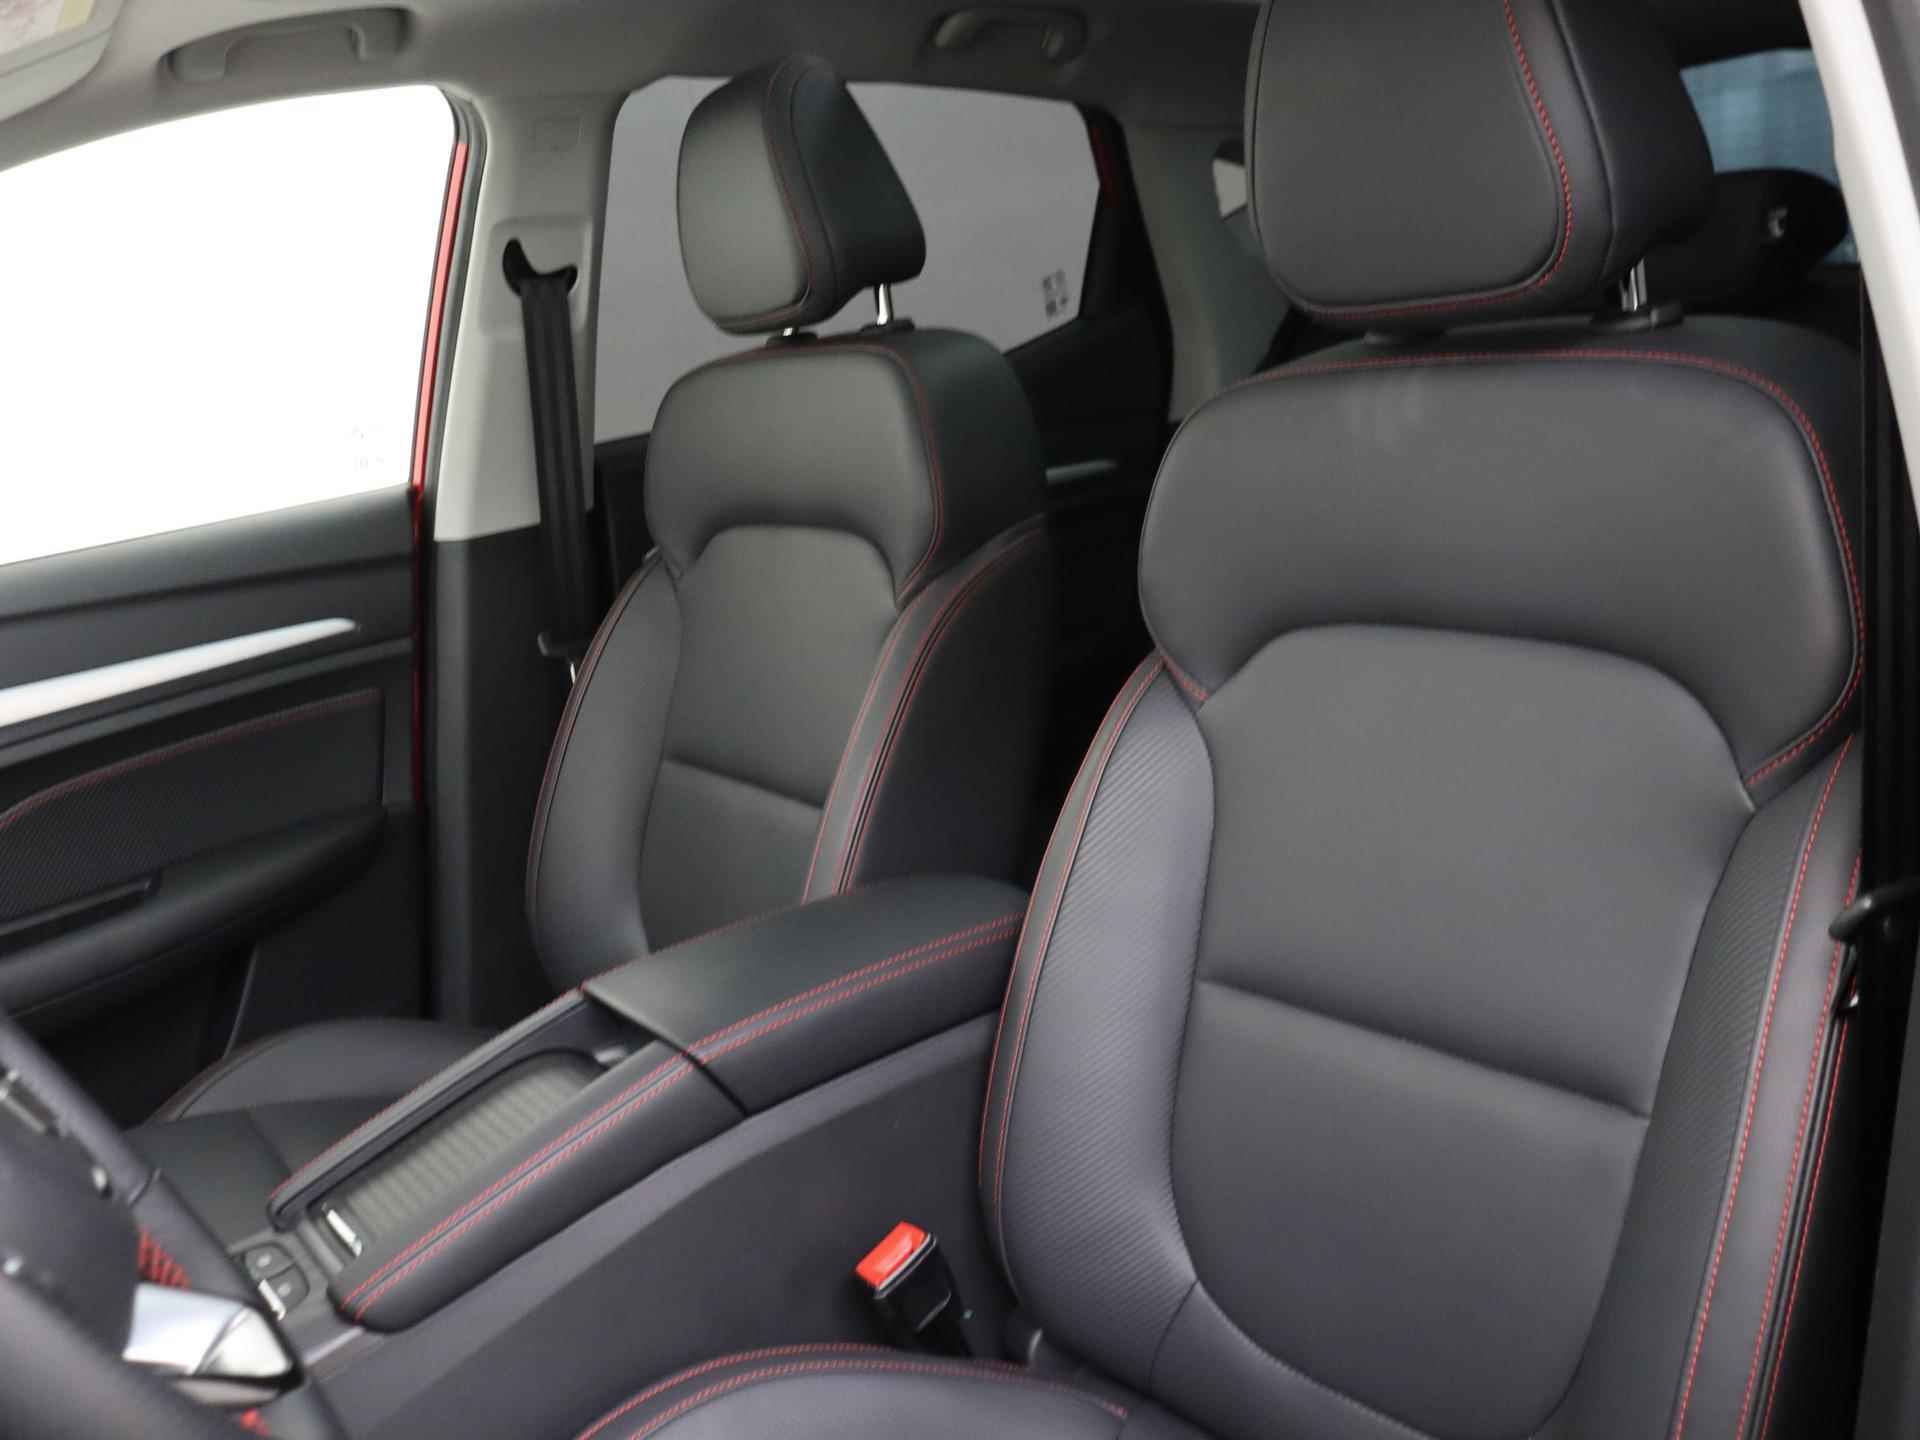 MG ZS EV Standard Range Luxury 50 kWh 320 KM WLTP | Panoramisch schuifkanteldak | 360 graden camera | Black Pack | Geblindeerde achterruiten | 19 inch Polished sportvelgen met Allseasonbanden - 6/30